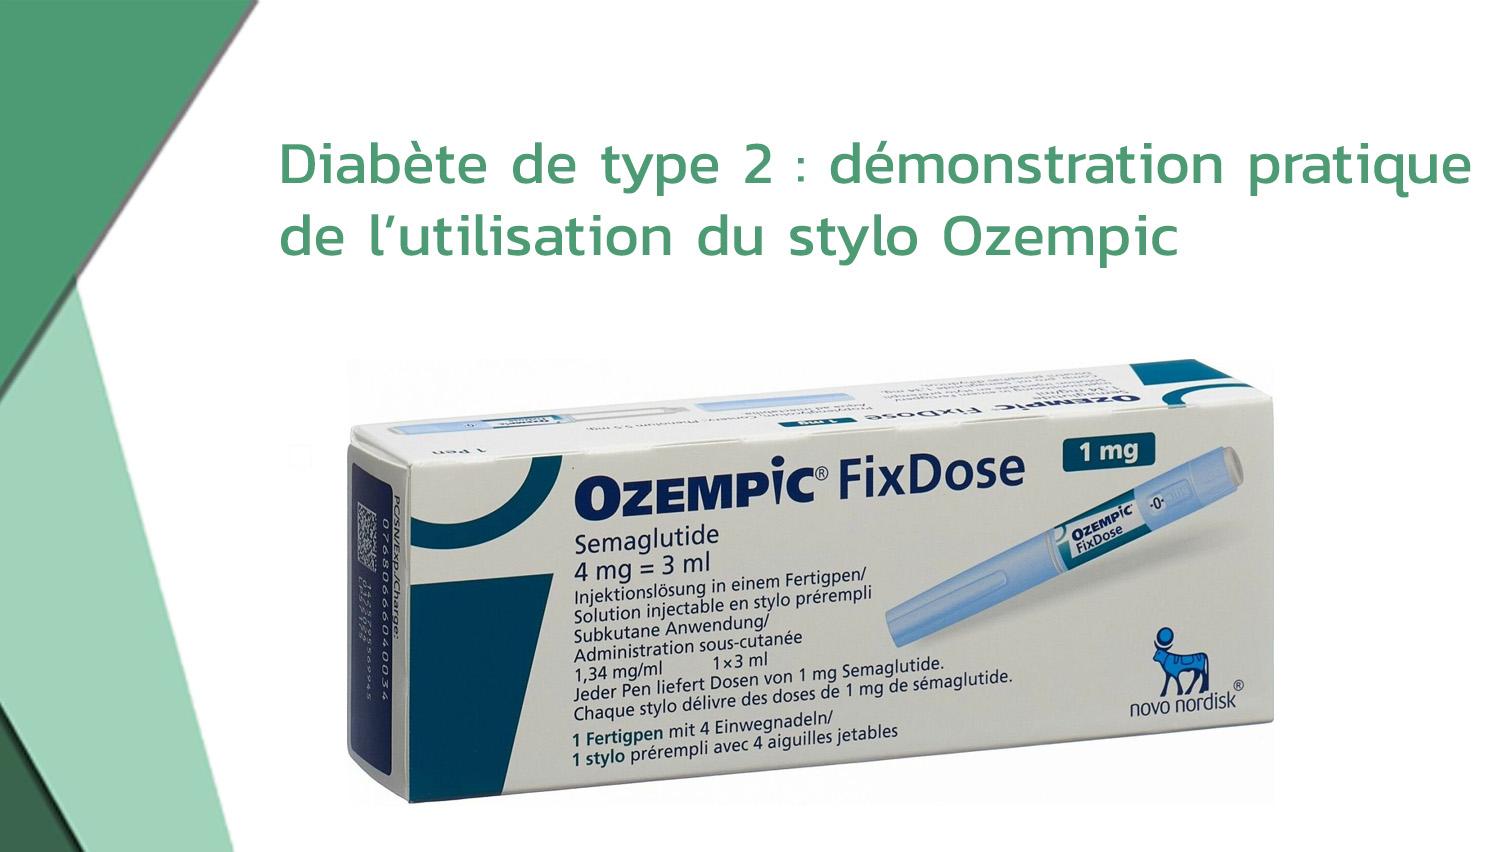 Diabète de type 2: démonstration pratique de l’utilisation du stylo Ozempic